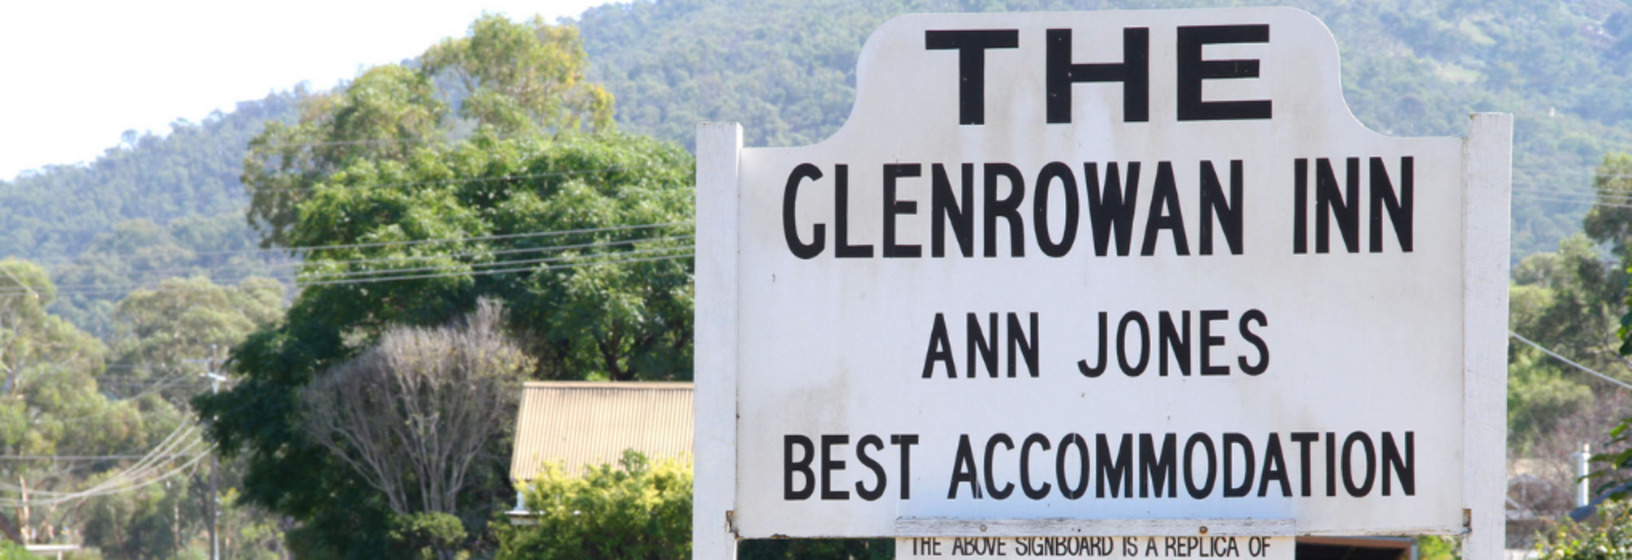 sign for Glenrowan Inn